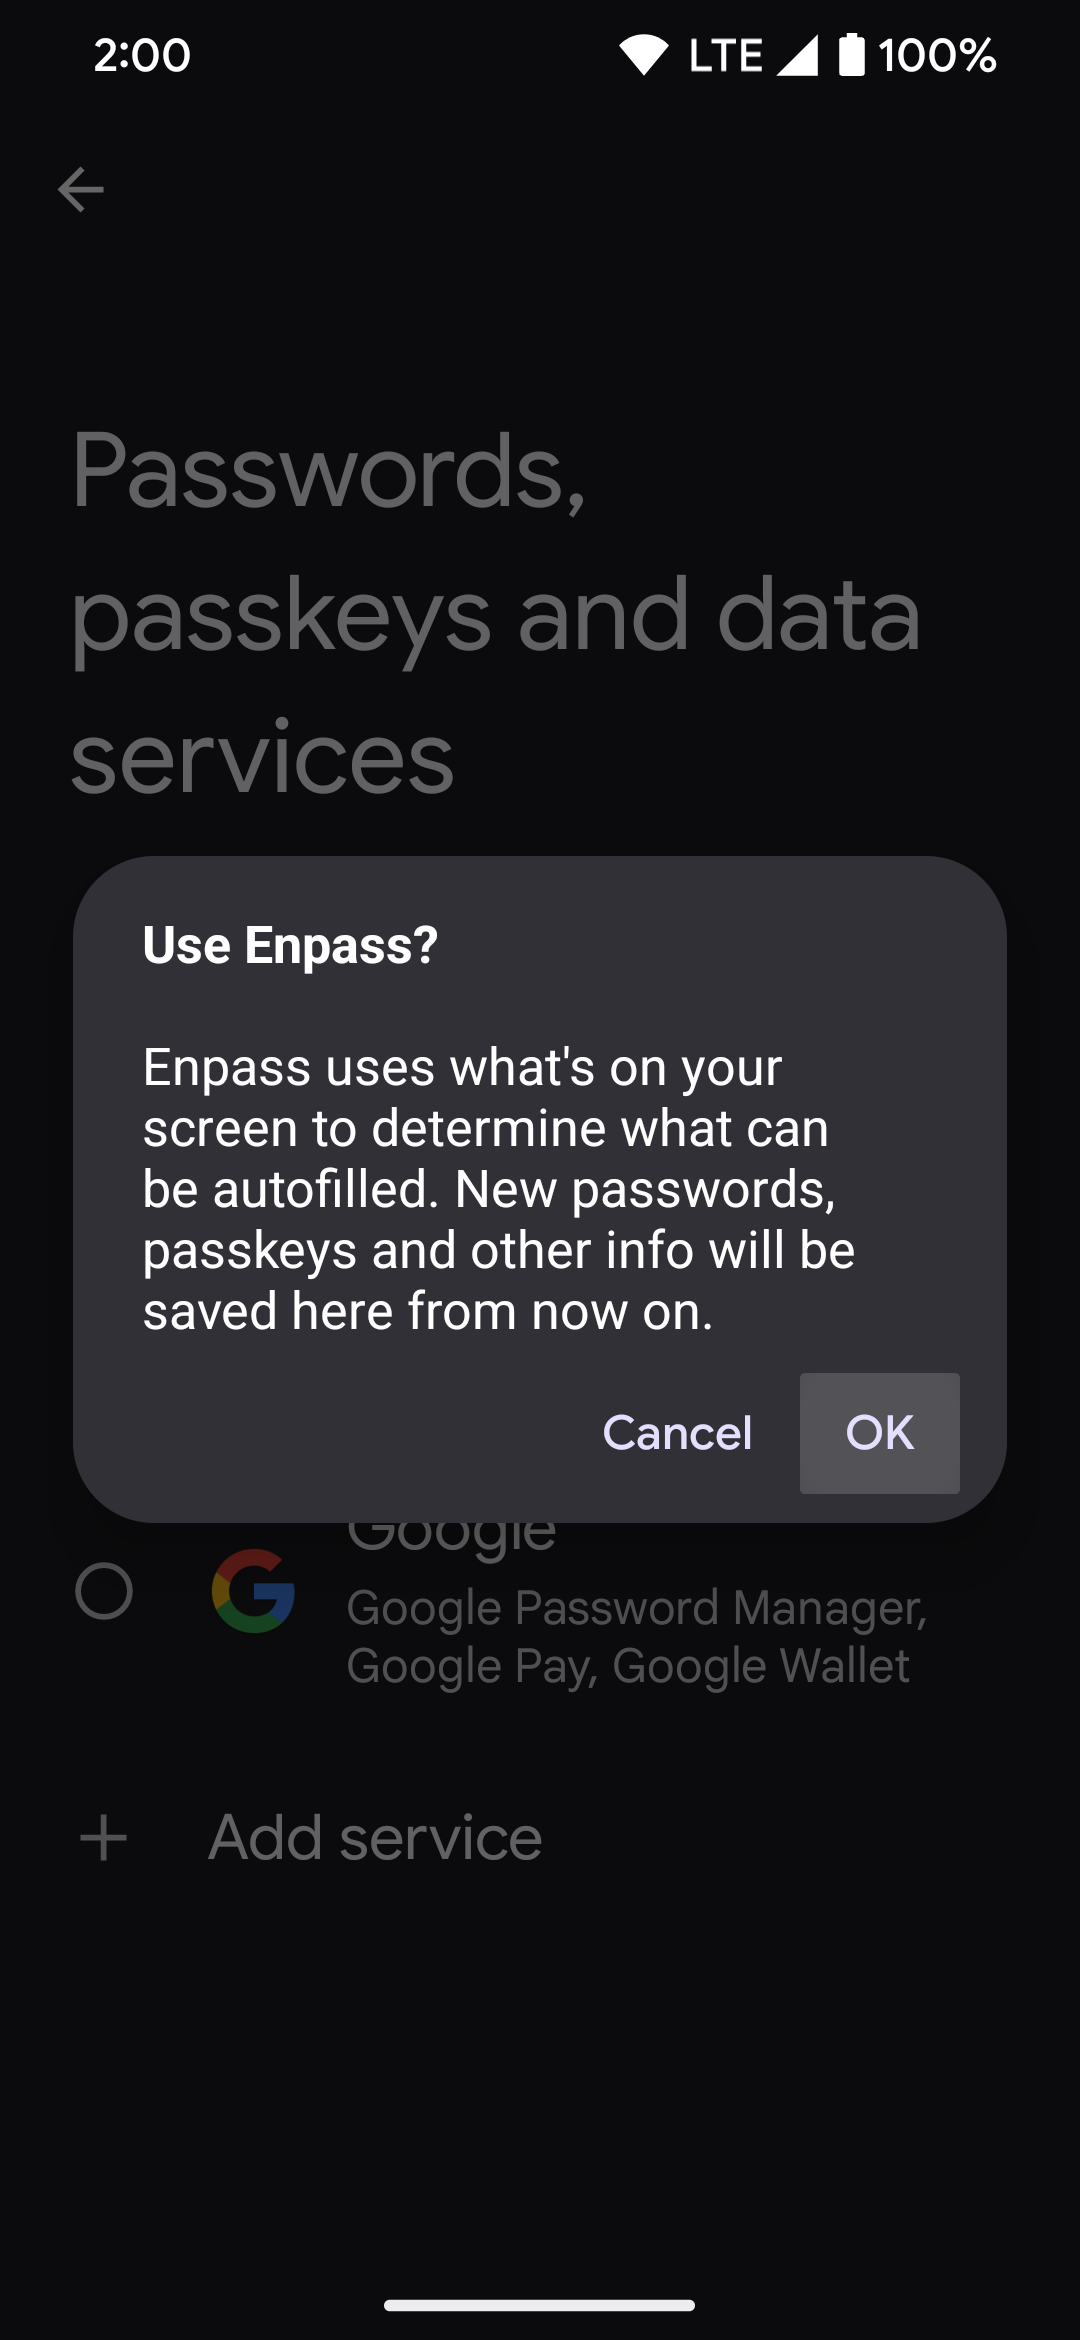 Pressionando a opção OK para permitir que o Android use o aplicativo Enpass como gerenciador de senhas padrão.